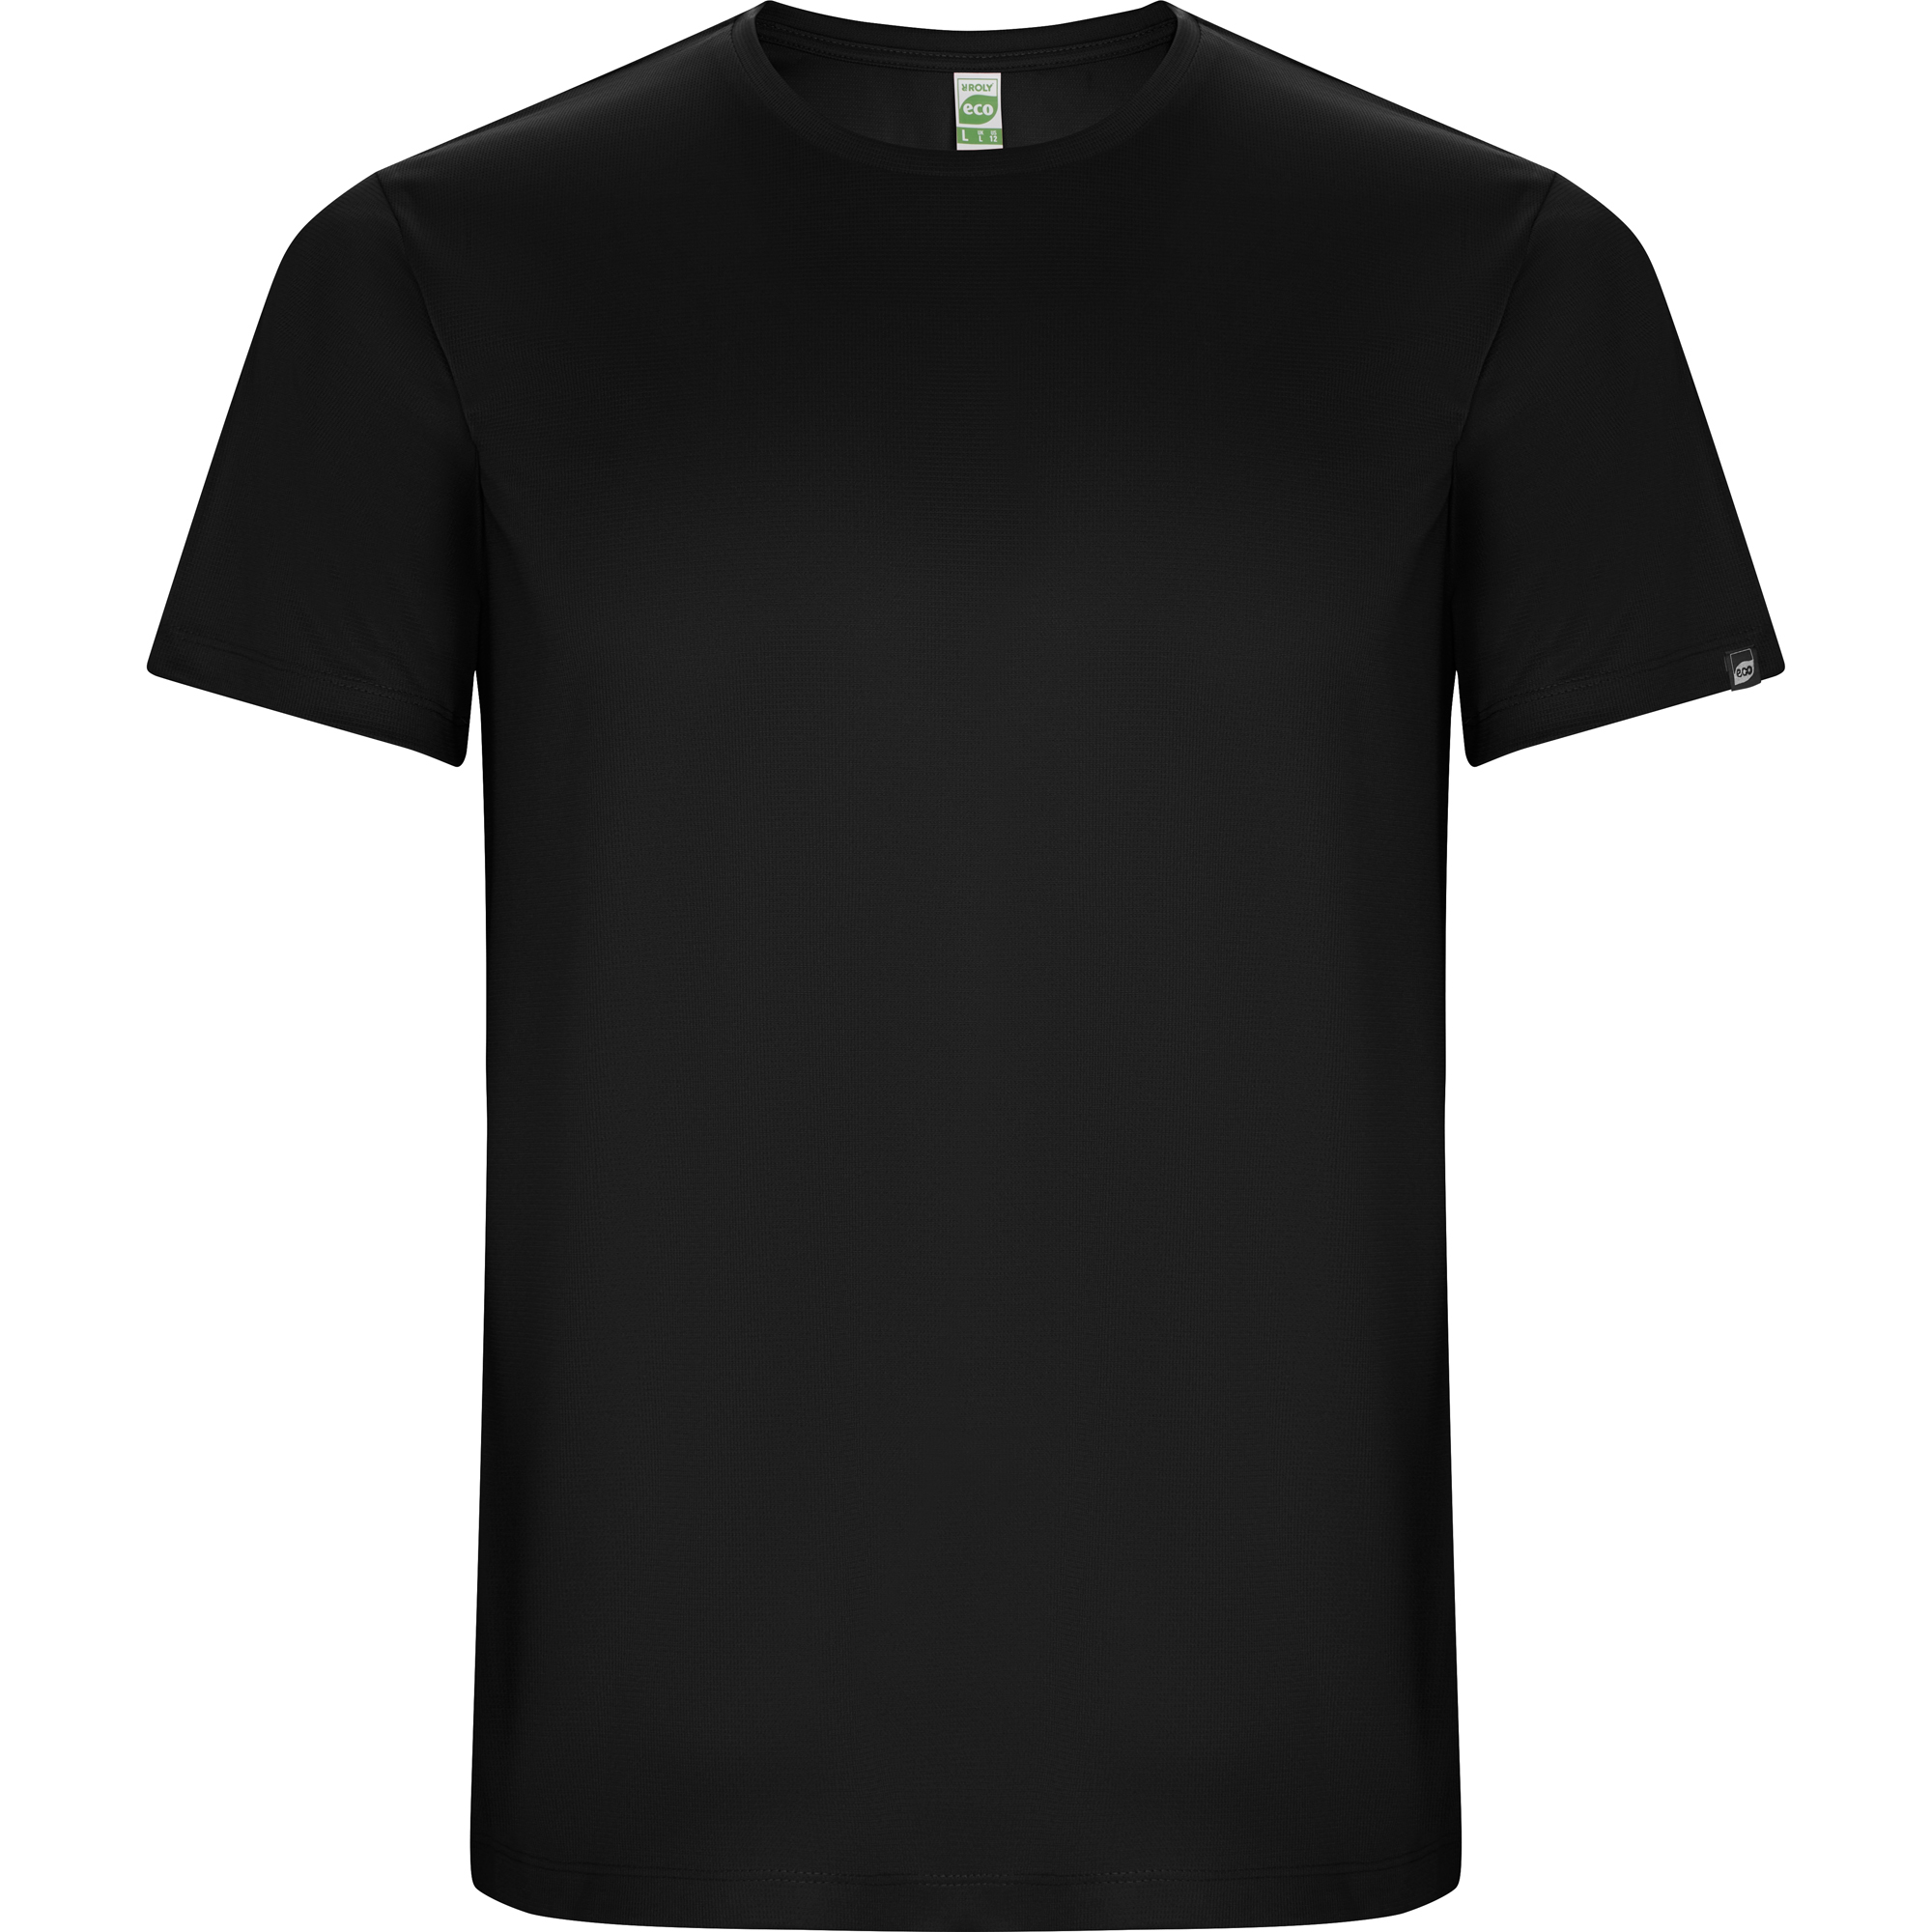 r0427-roly-imola-t-shirt-tecnica-nero.jpg